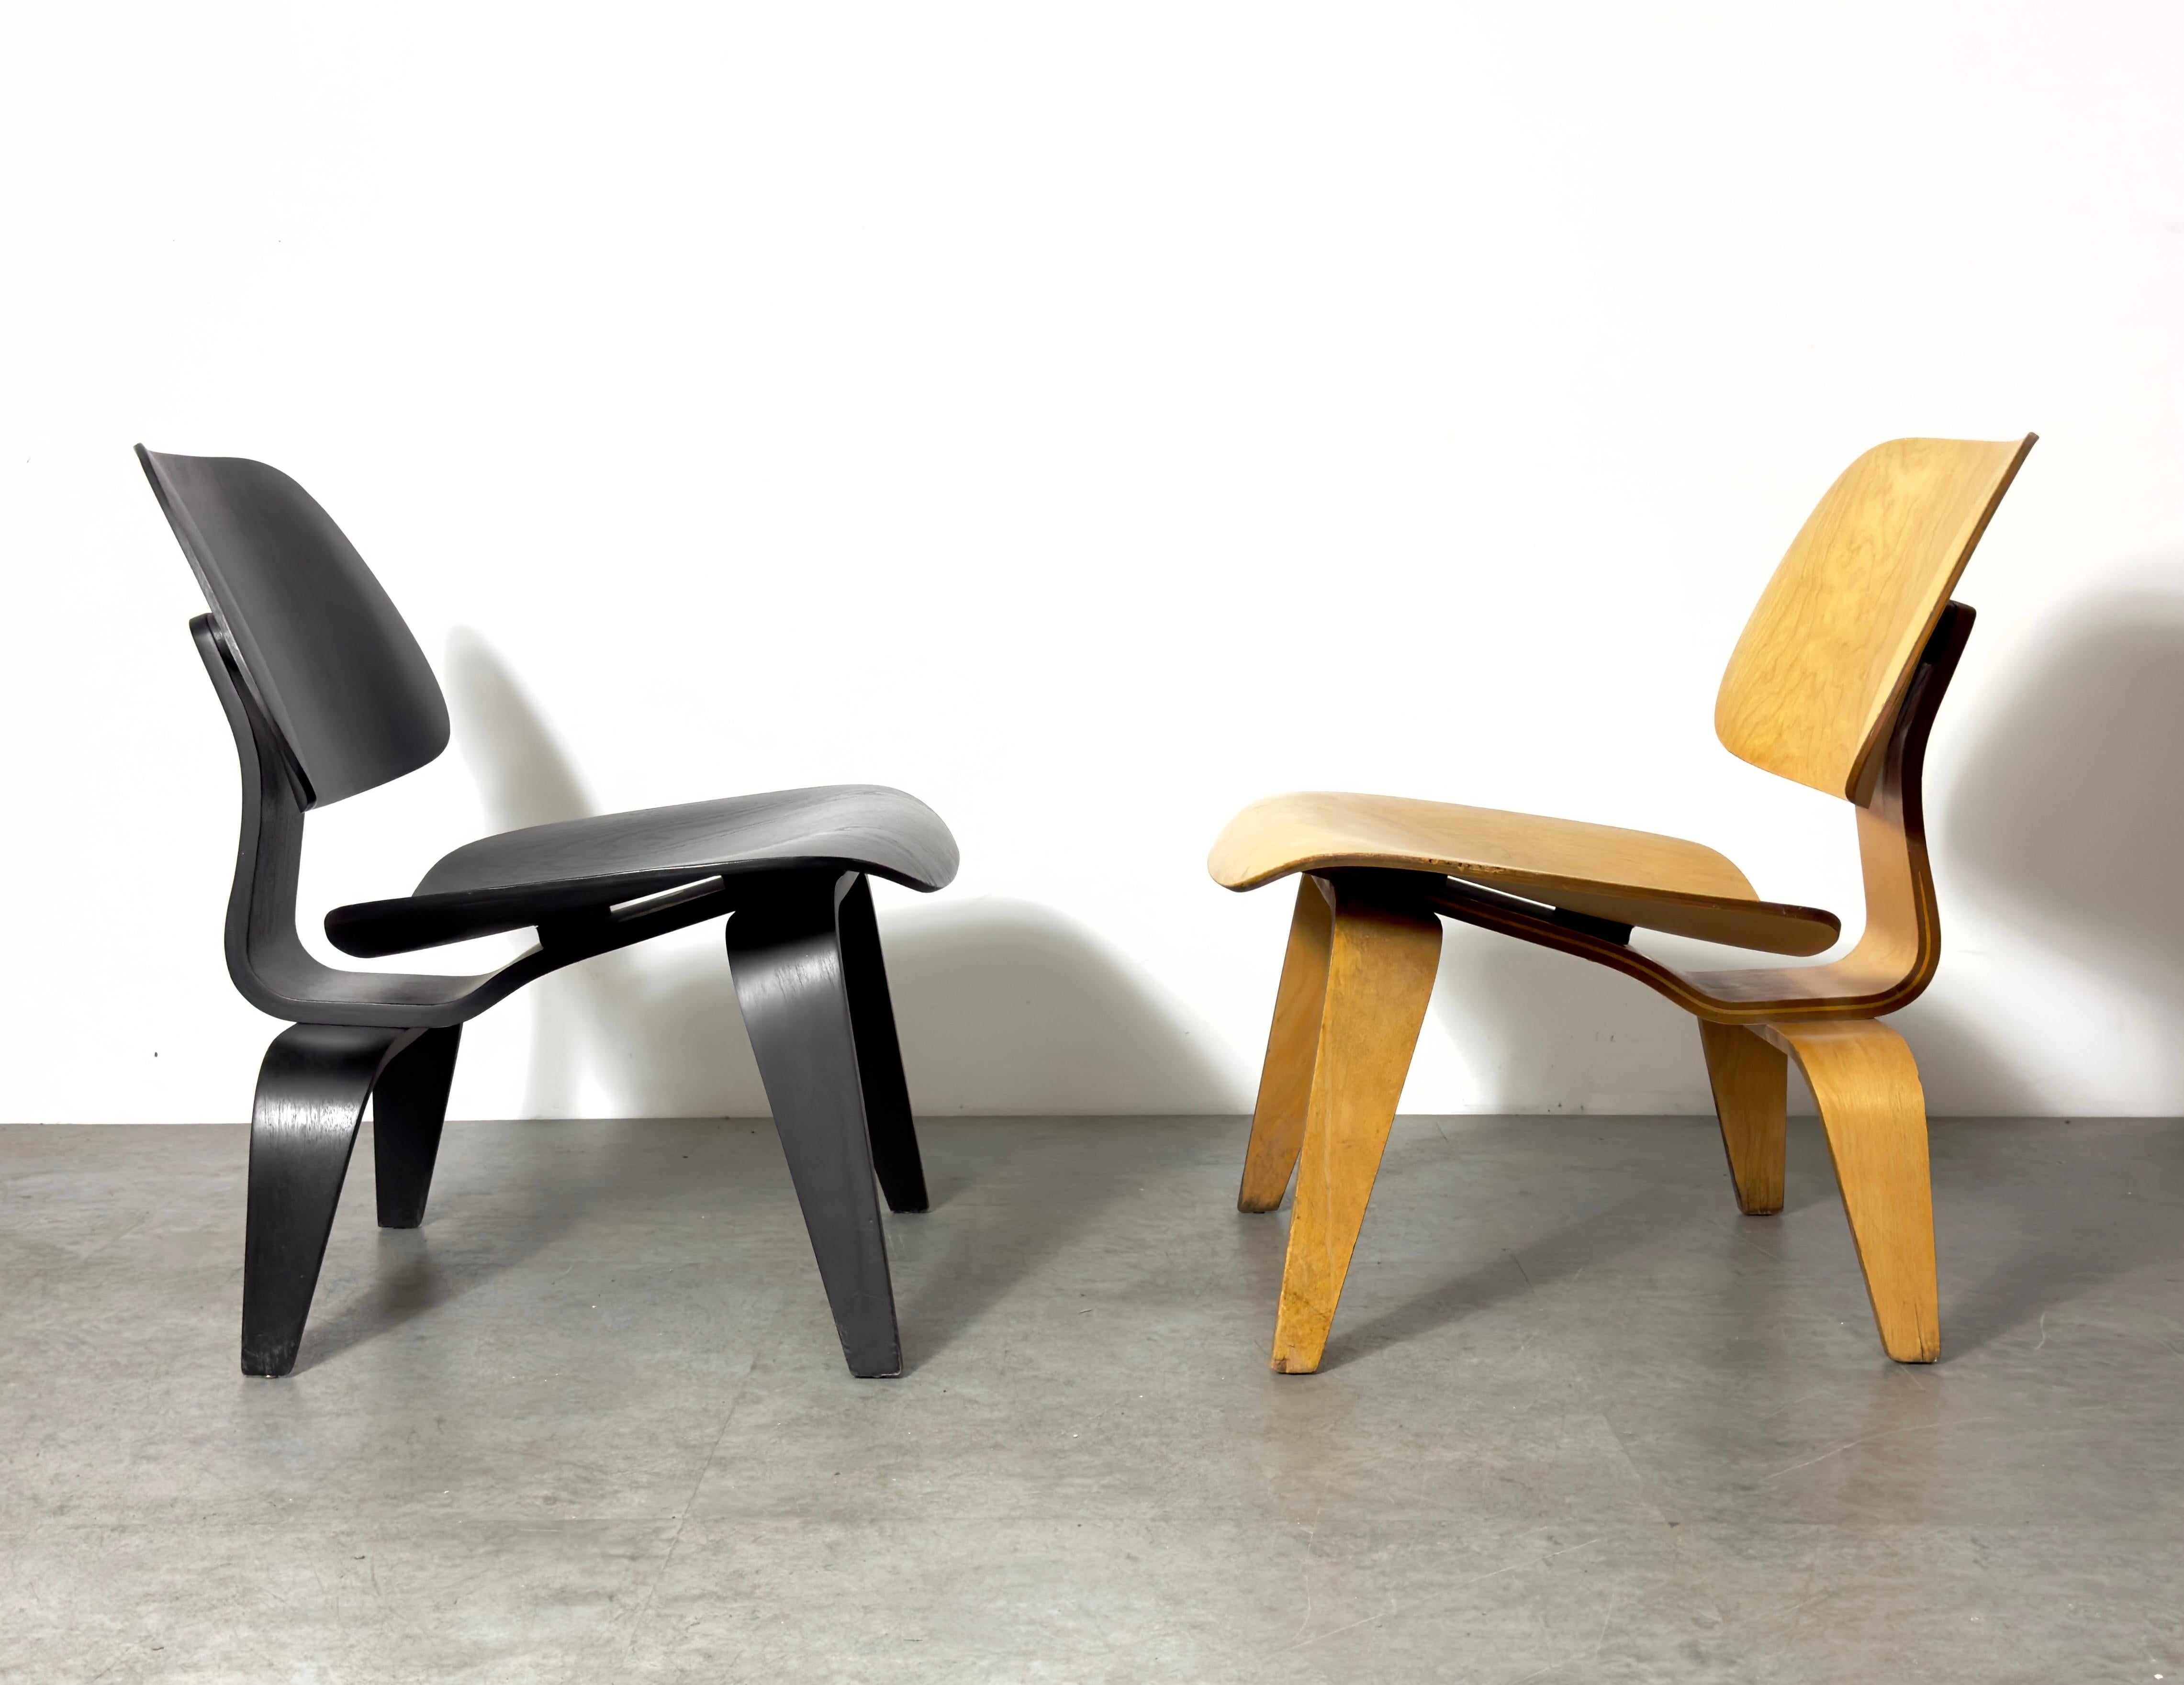 LCW Lounge Chair der 1. Generation, entworfen von Charles und Ray Eames
Produziert von Evans Plywood Products ca. 1948-49
Geformtes Esche-Sperrholz in schwarzer Ausführung 
Bemerkenswerter Zustand mit 5-2-5 Schraubenmuster, originalen